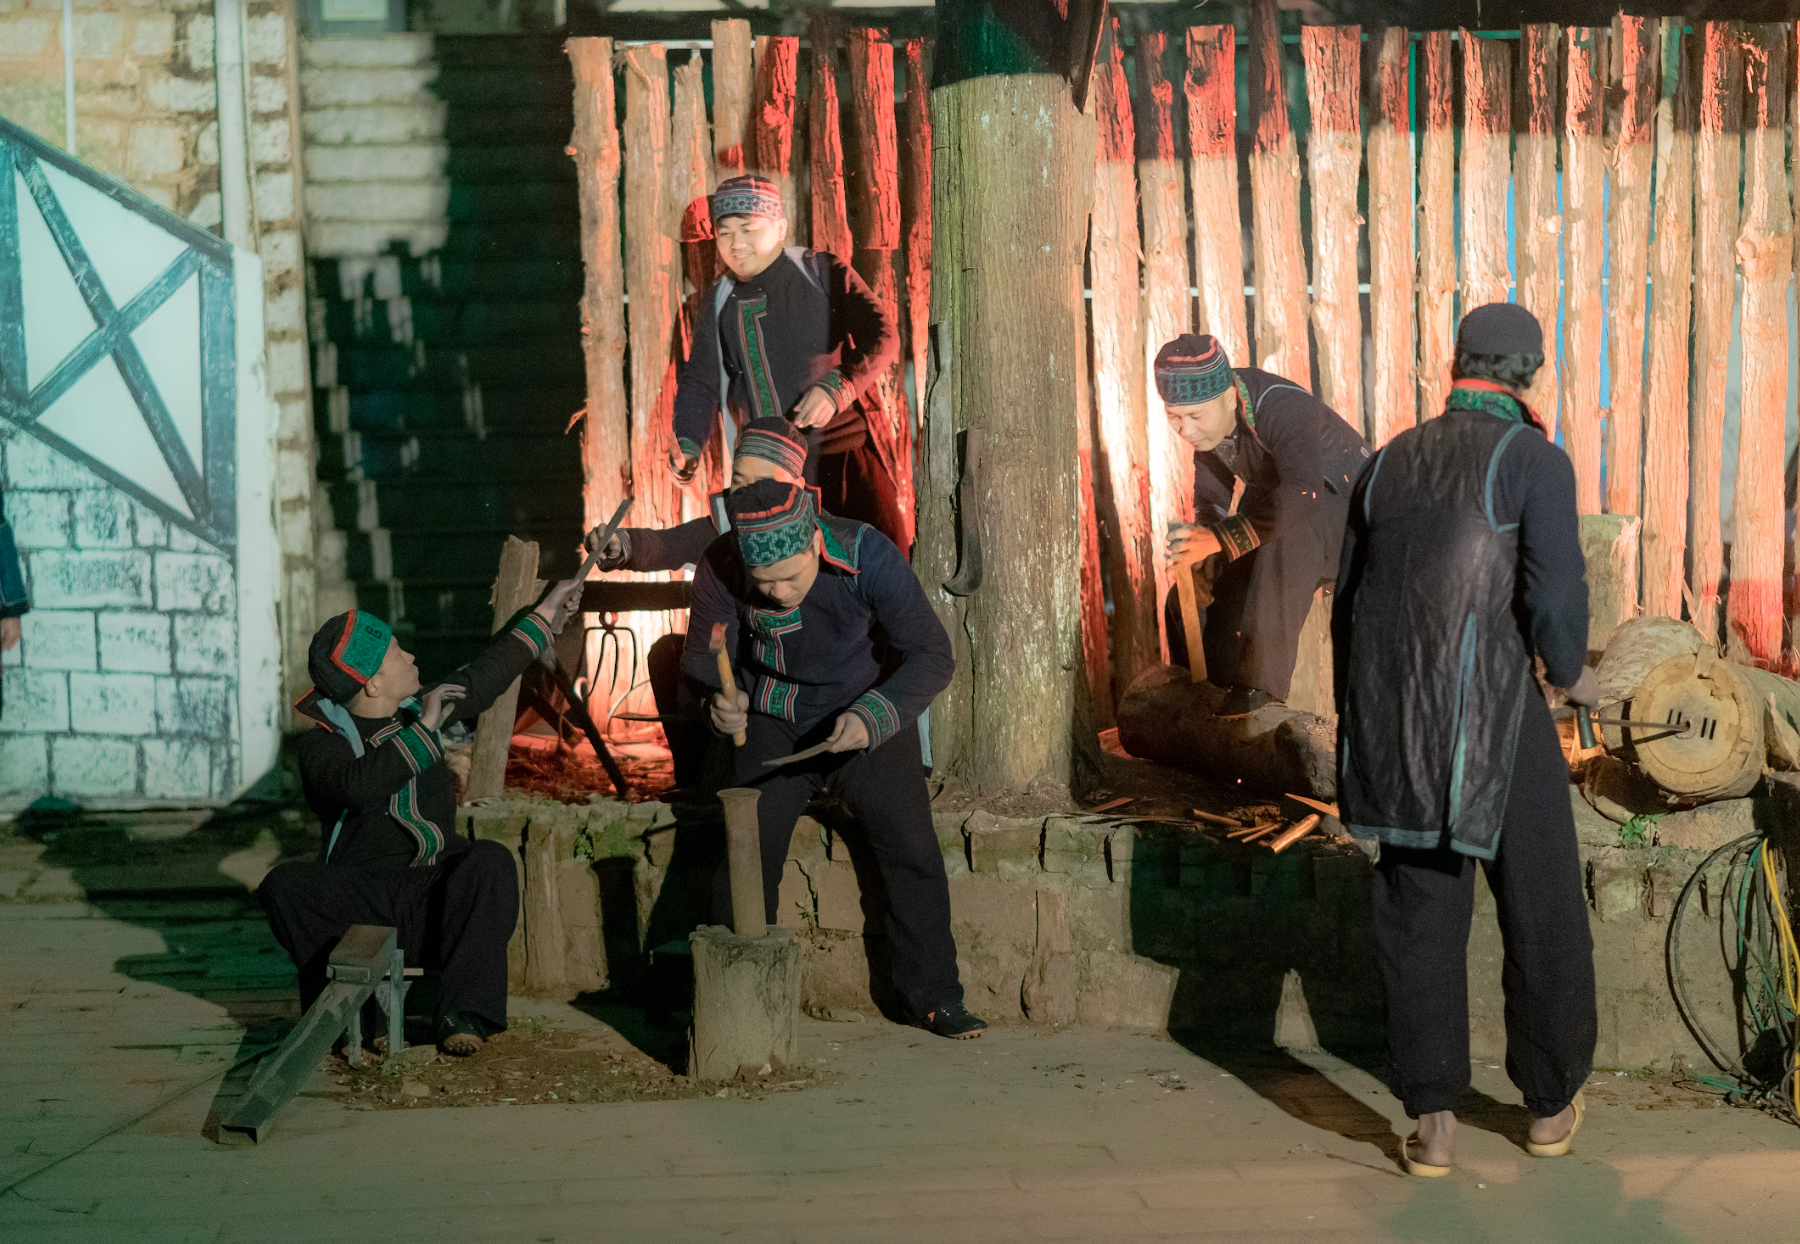 Nét đẹp văn hóa người Mông  trong vở thực cảnh The Mong show - 3